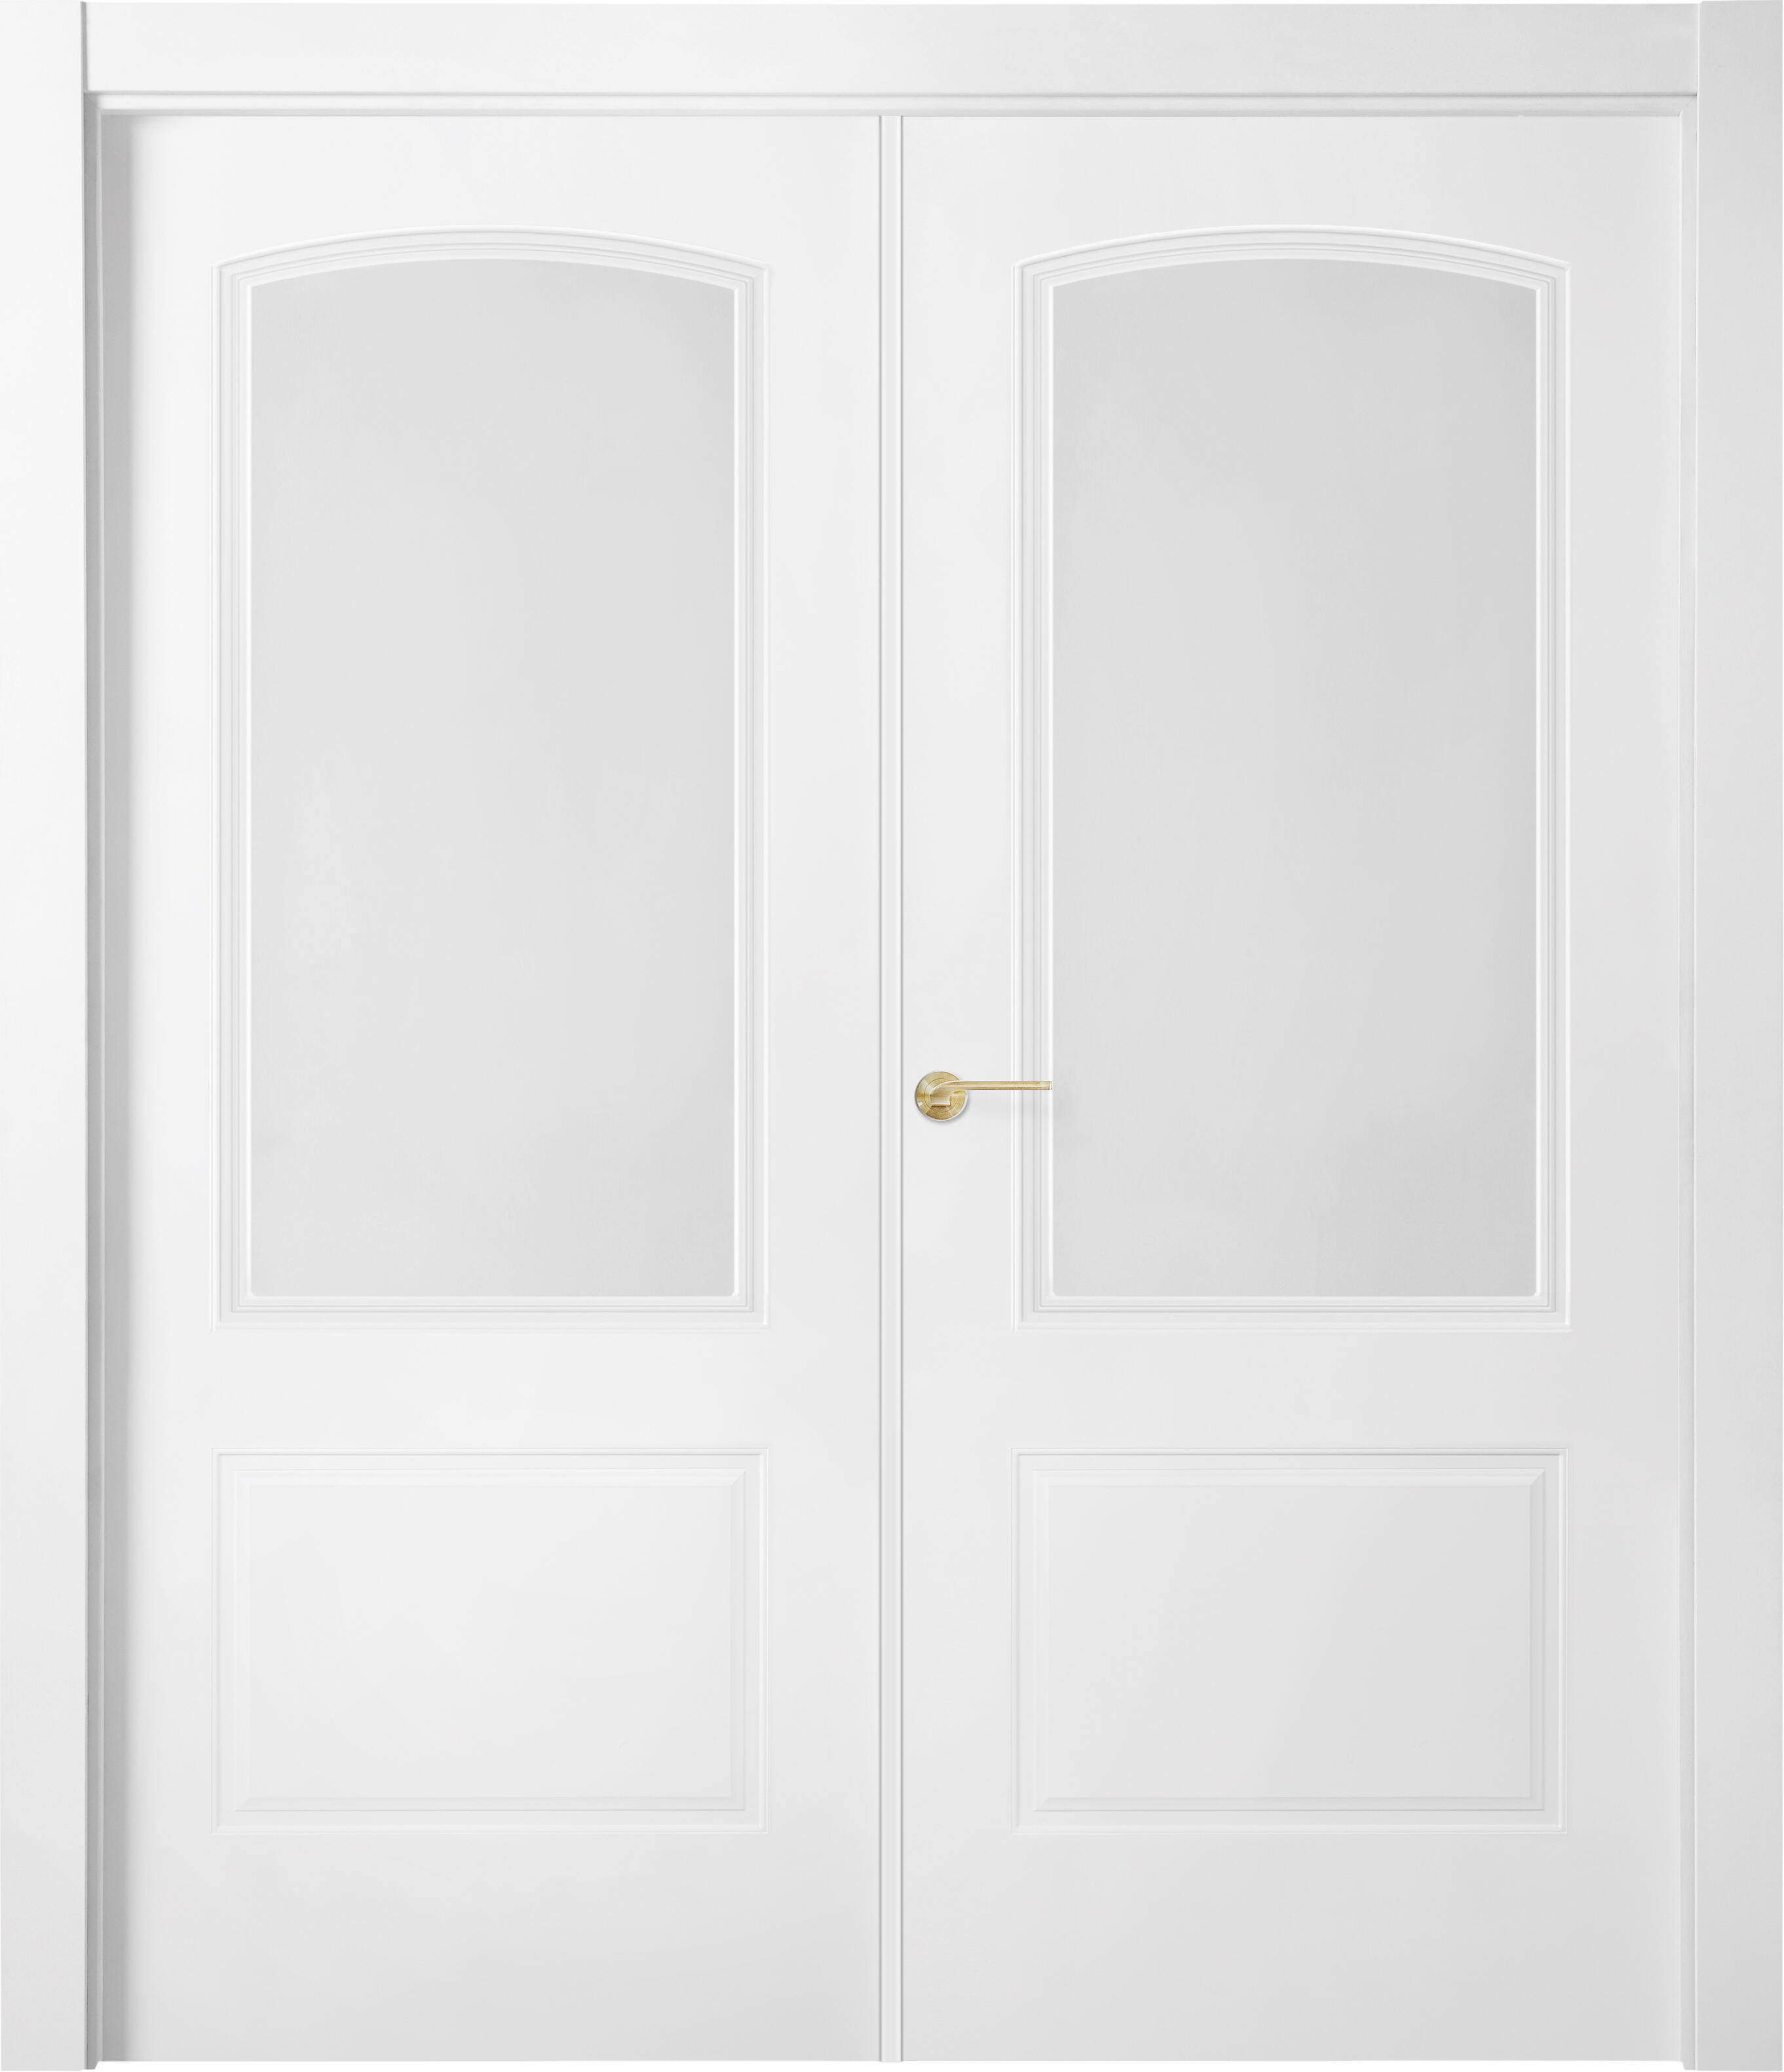 Puerta abatible berlin blanca line plus con cristal blanco izquierda de 145